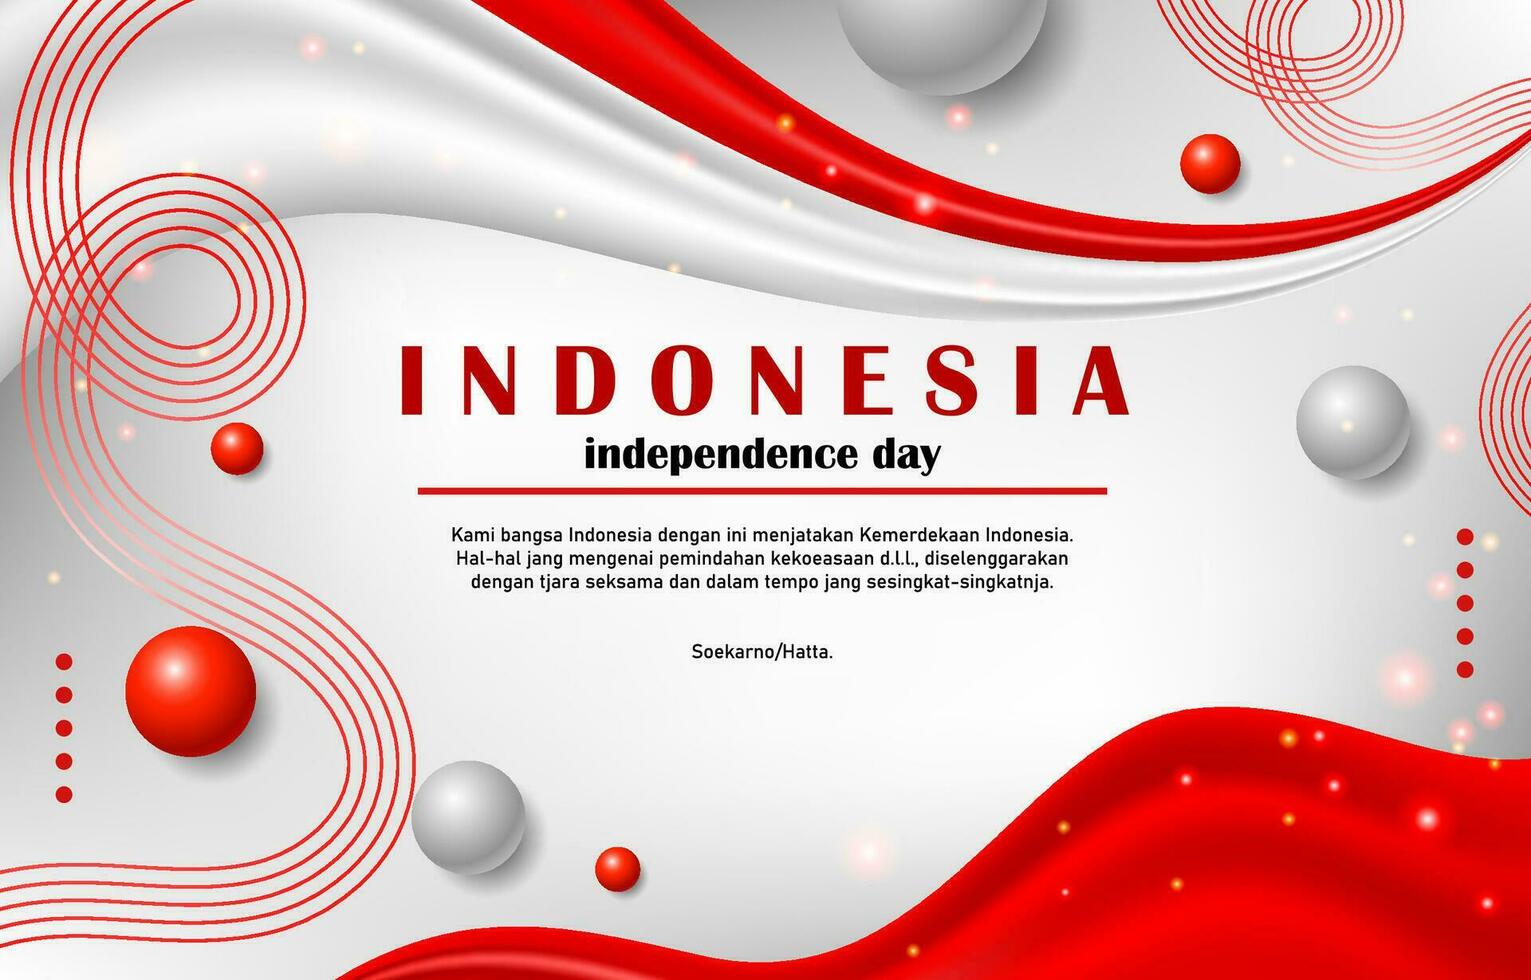 Indonesien Unabhängigkeitstag Hintergrund vektor